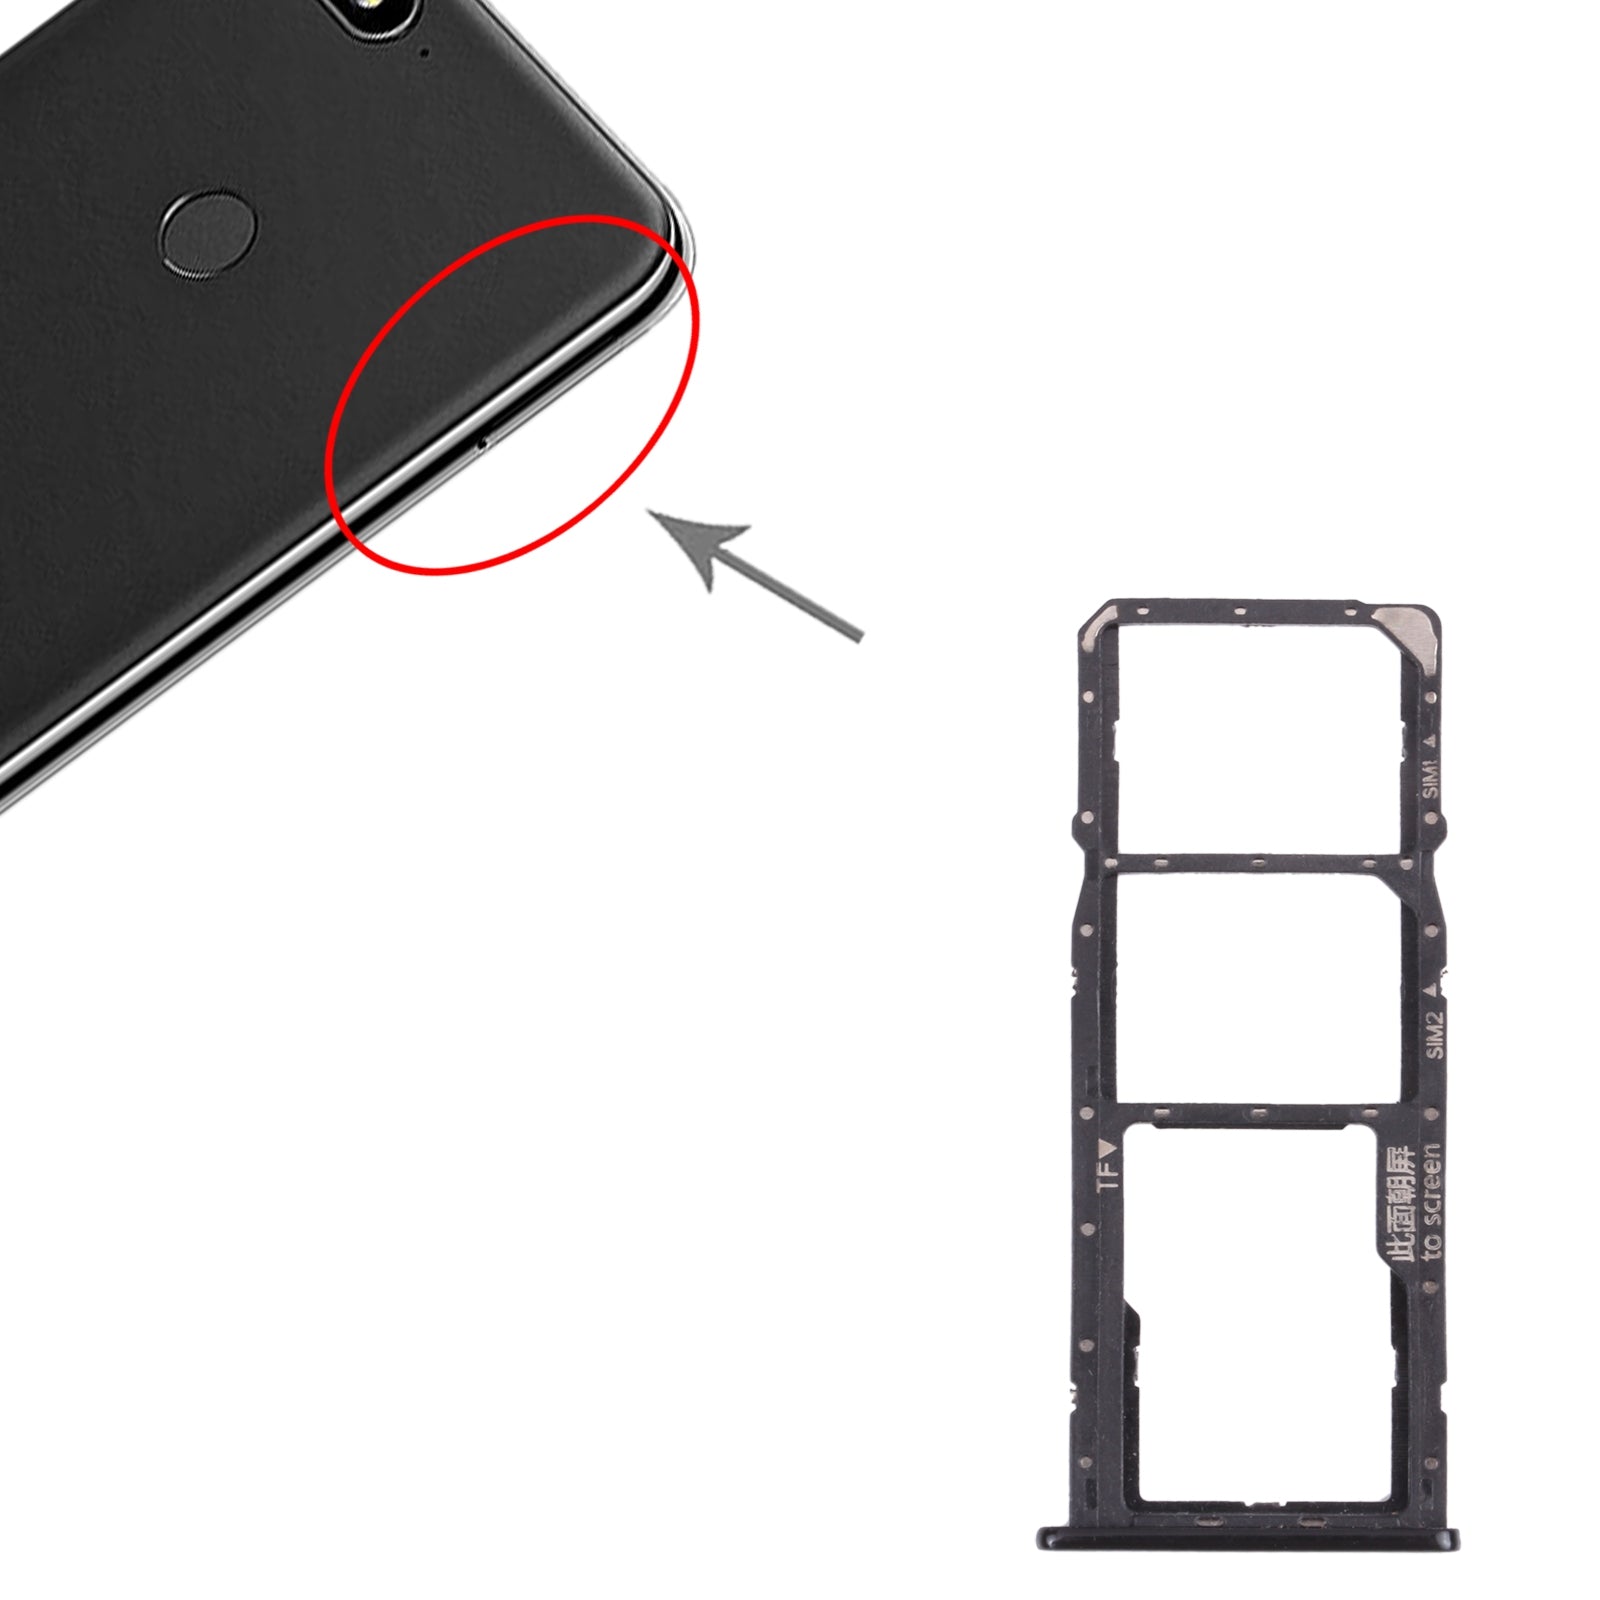 SIM / Micro SD Holder Tray Huawei Y7 2018 Black